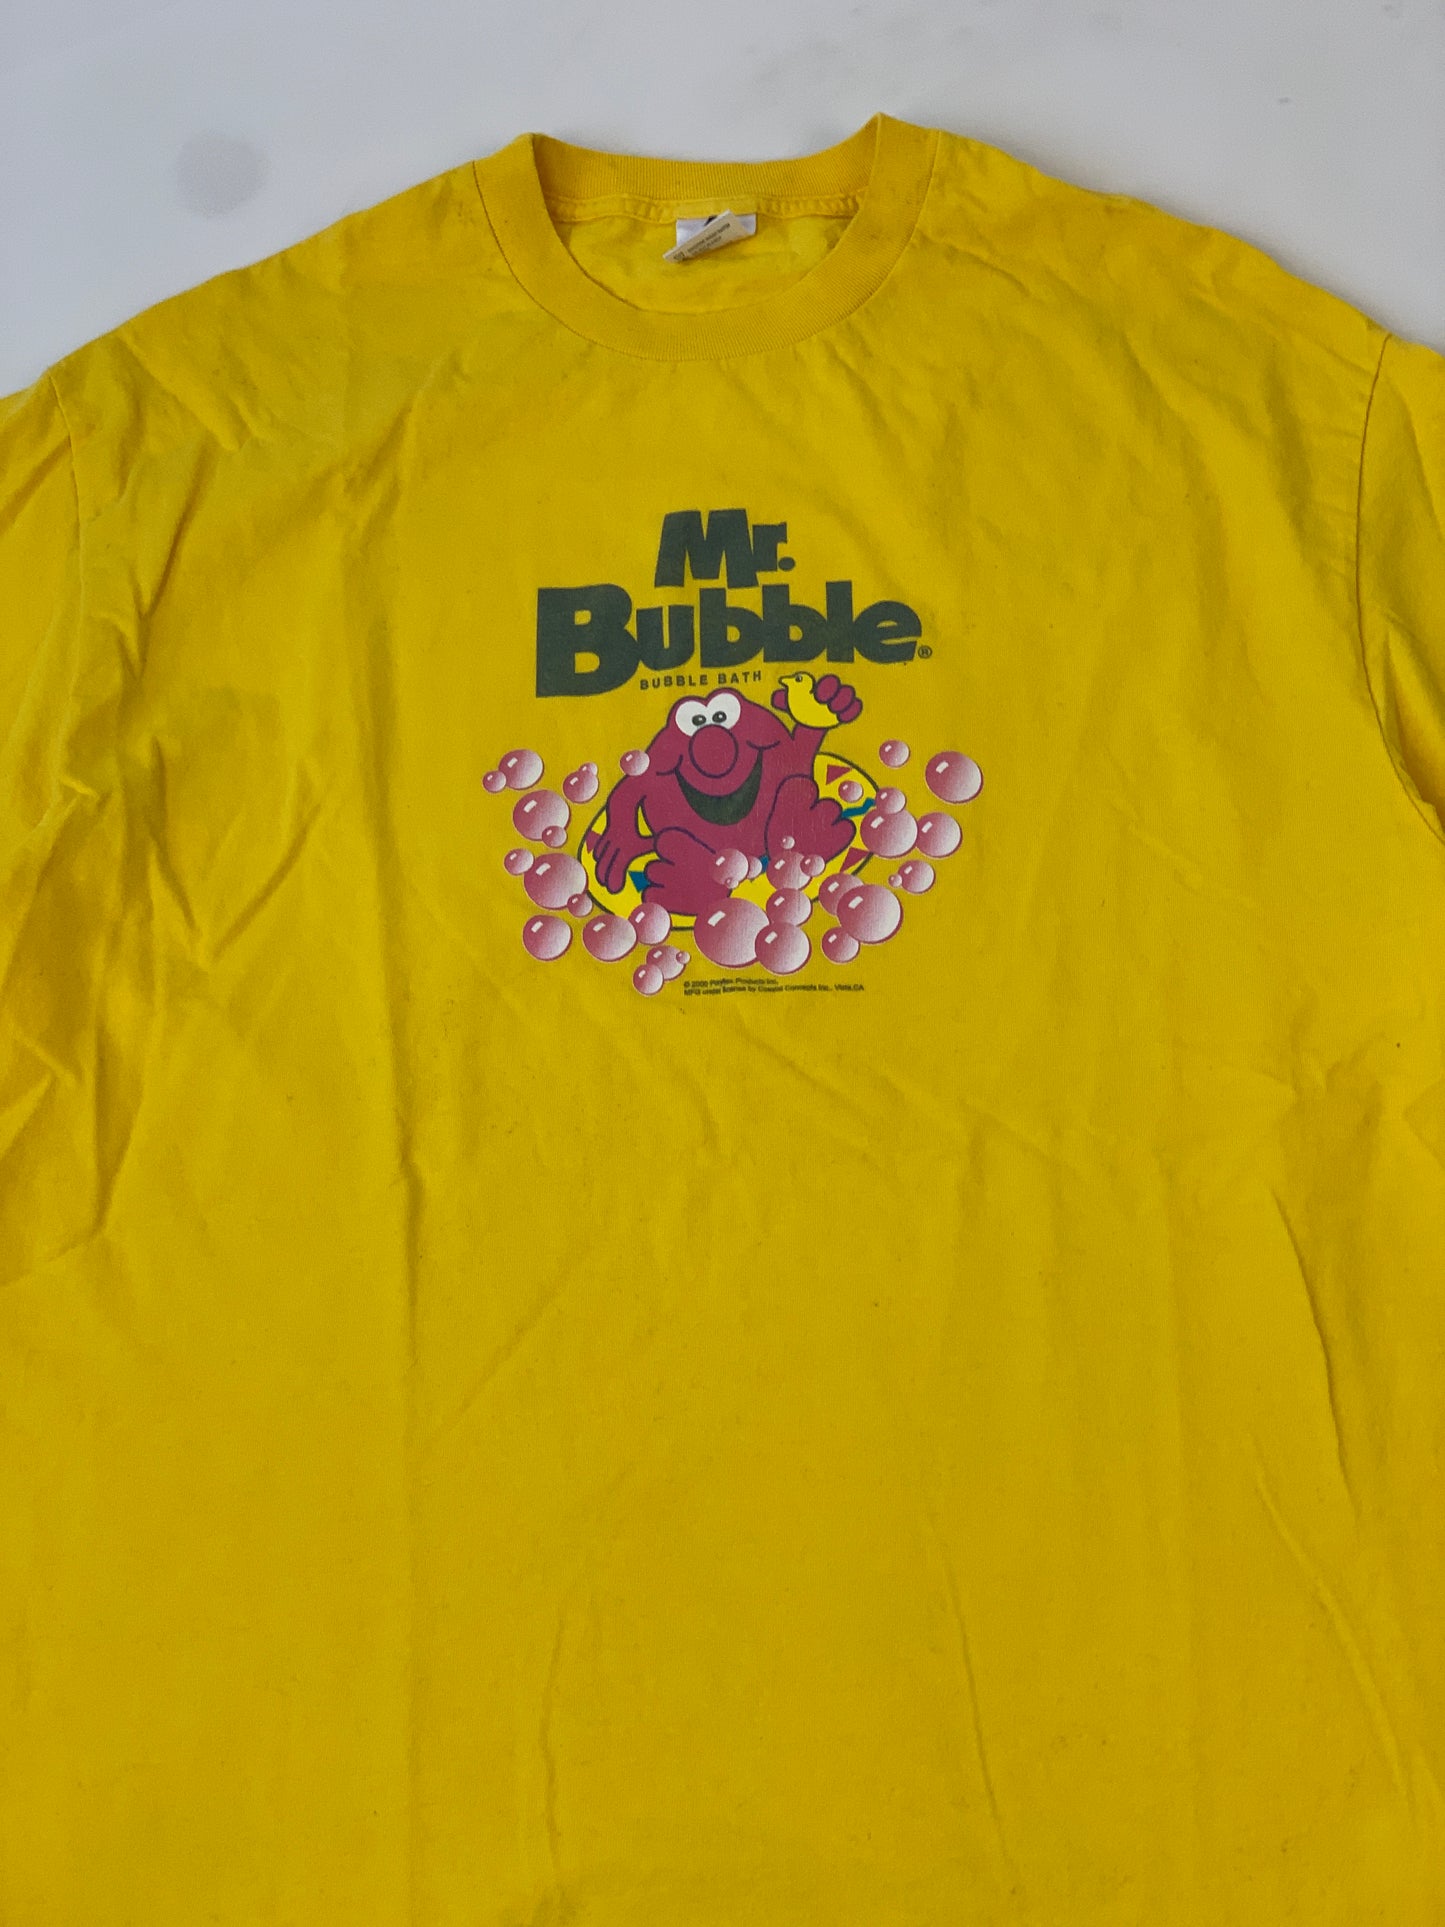 Mr. Bubble Vintage T-Shirt - XL